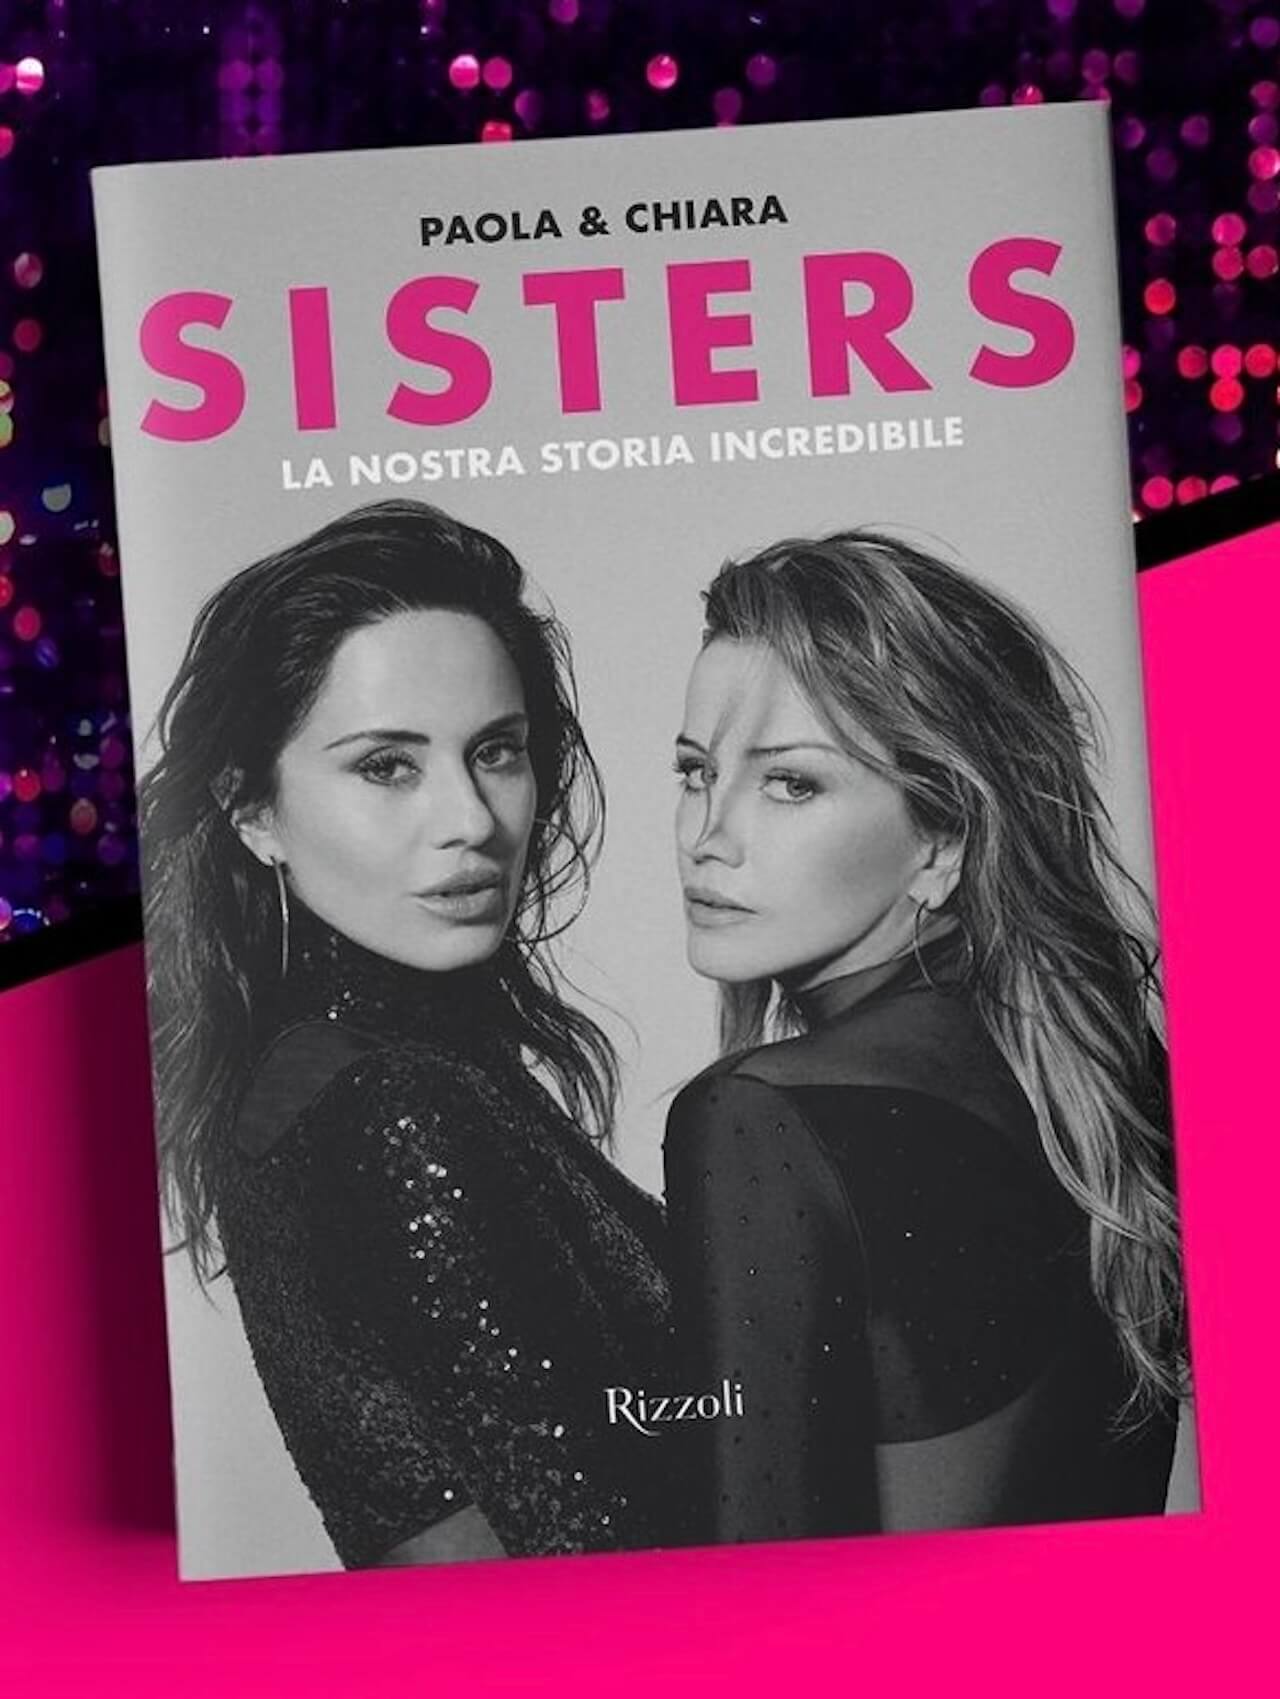 Sisters, arriva il libro autobiografico di Paola e Chiara Iezzi - Sisters arriva il libro biografico di Paola e Chiara Iezzi 2 - Gay.it